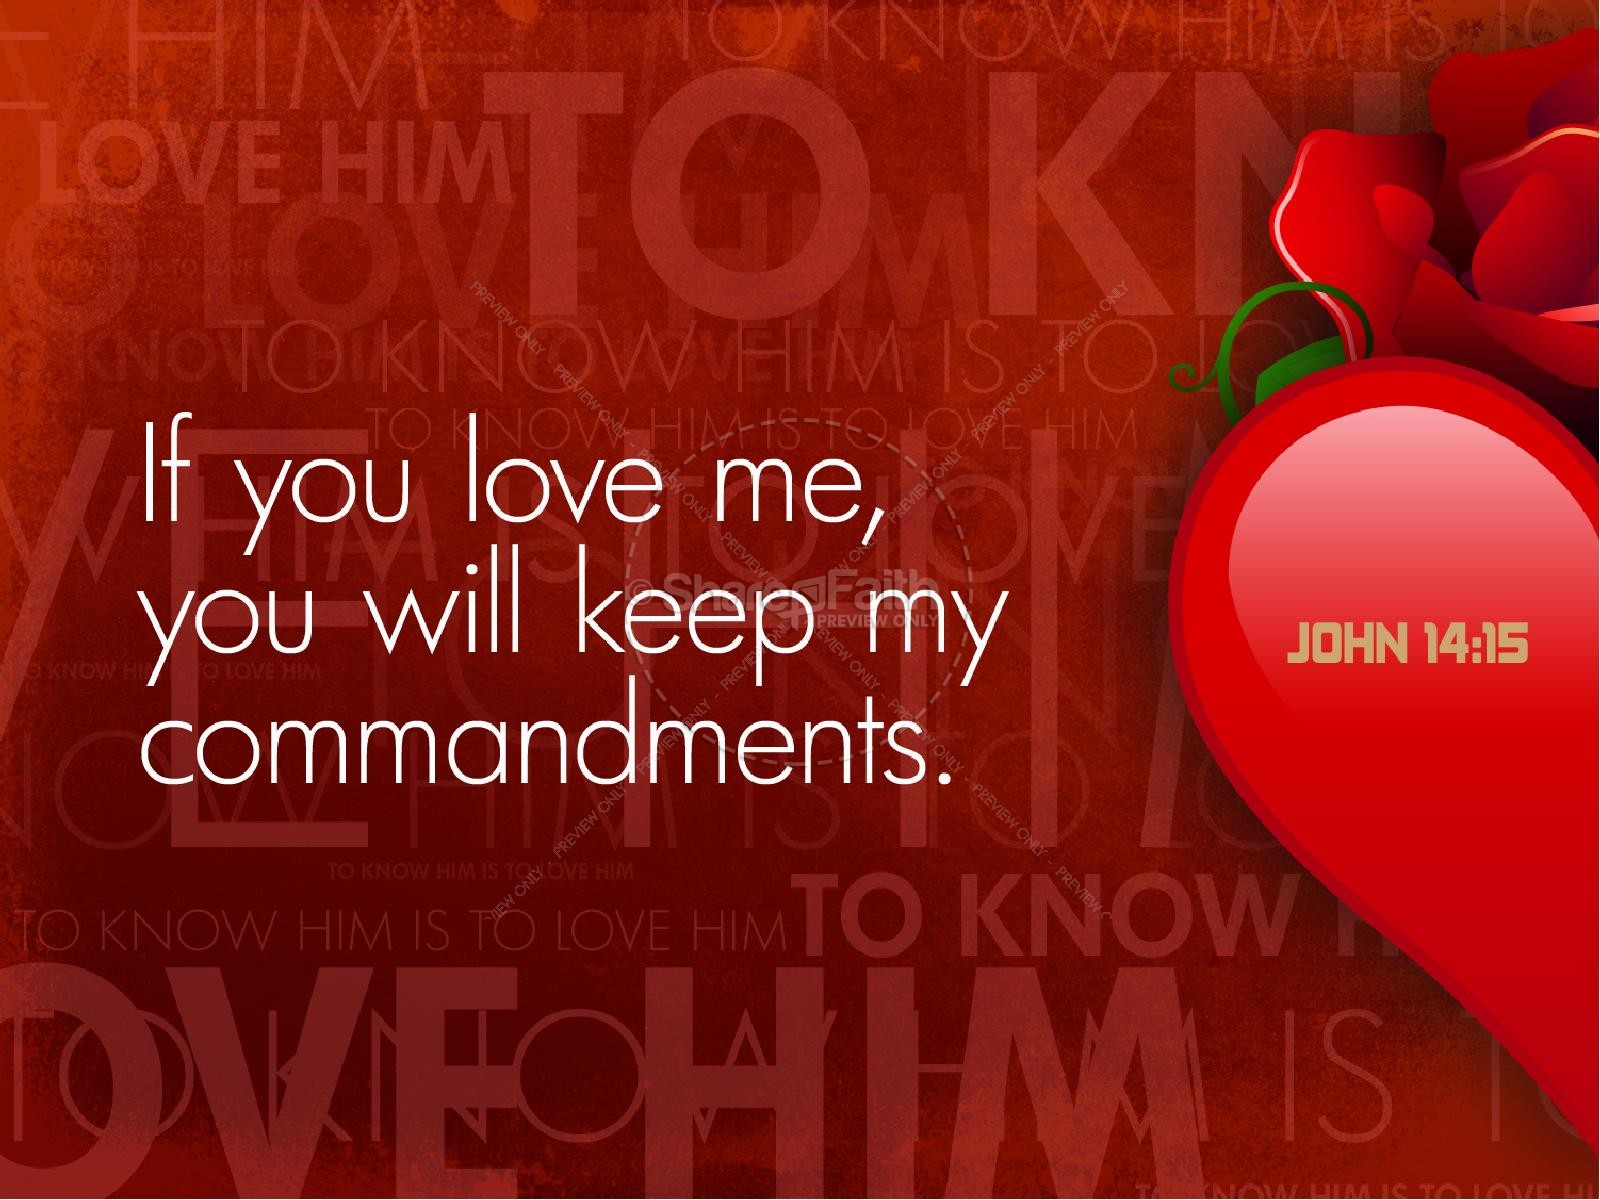 Know Him Love Him PowerPoint Sermon